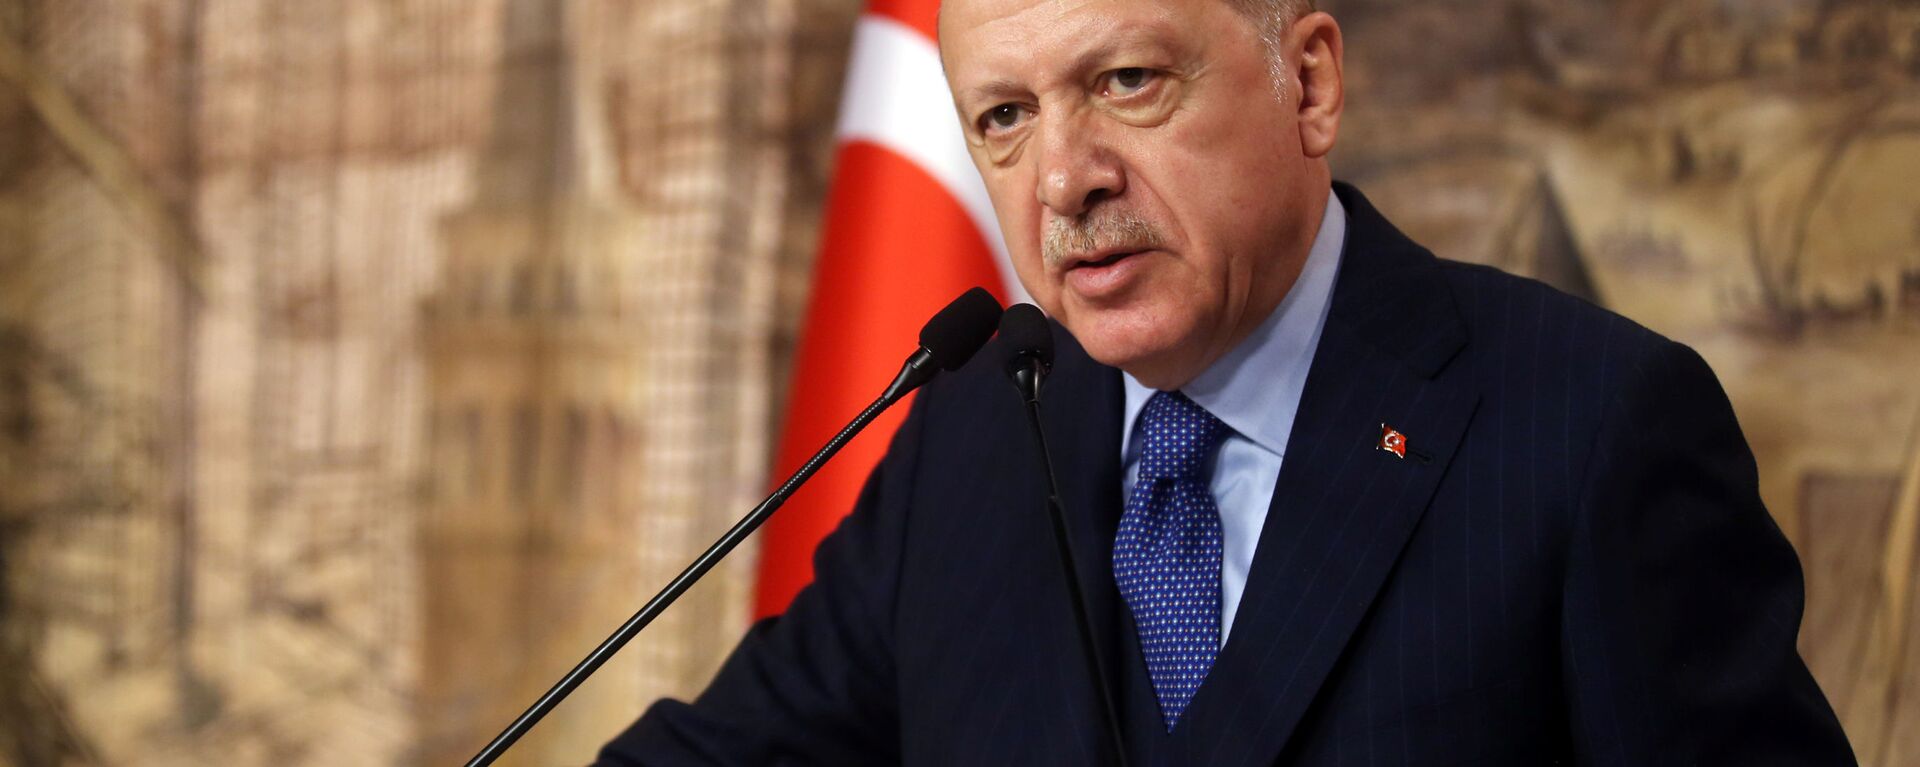 الرئيس التركي أردوغان يتحدث خلال اجتماع في اسطنبول - سبوتنيك عربي, 1920, 14.04.2020